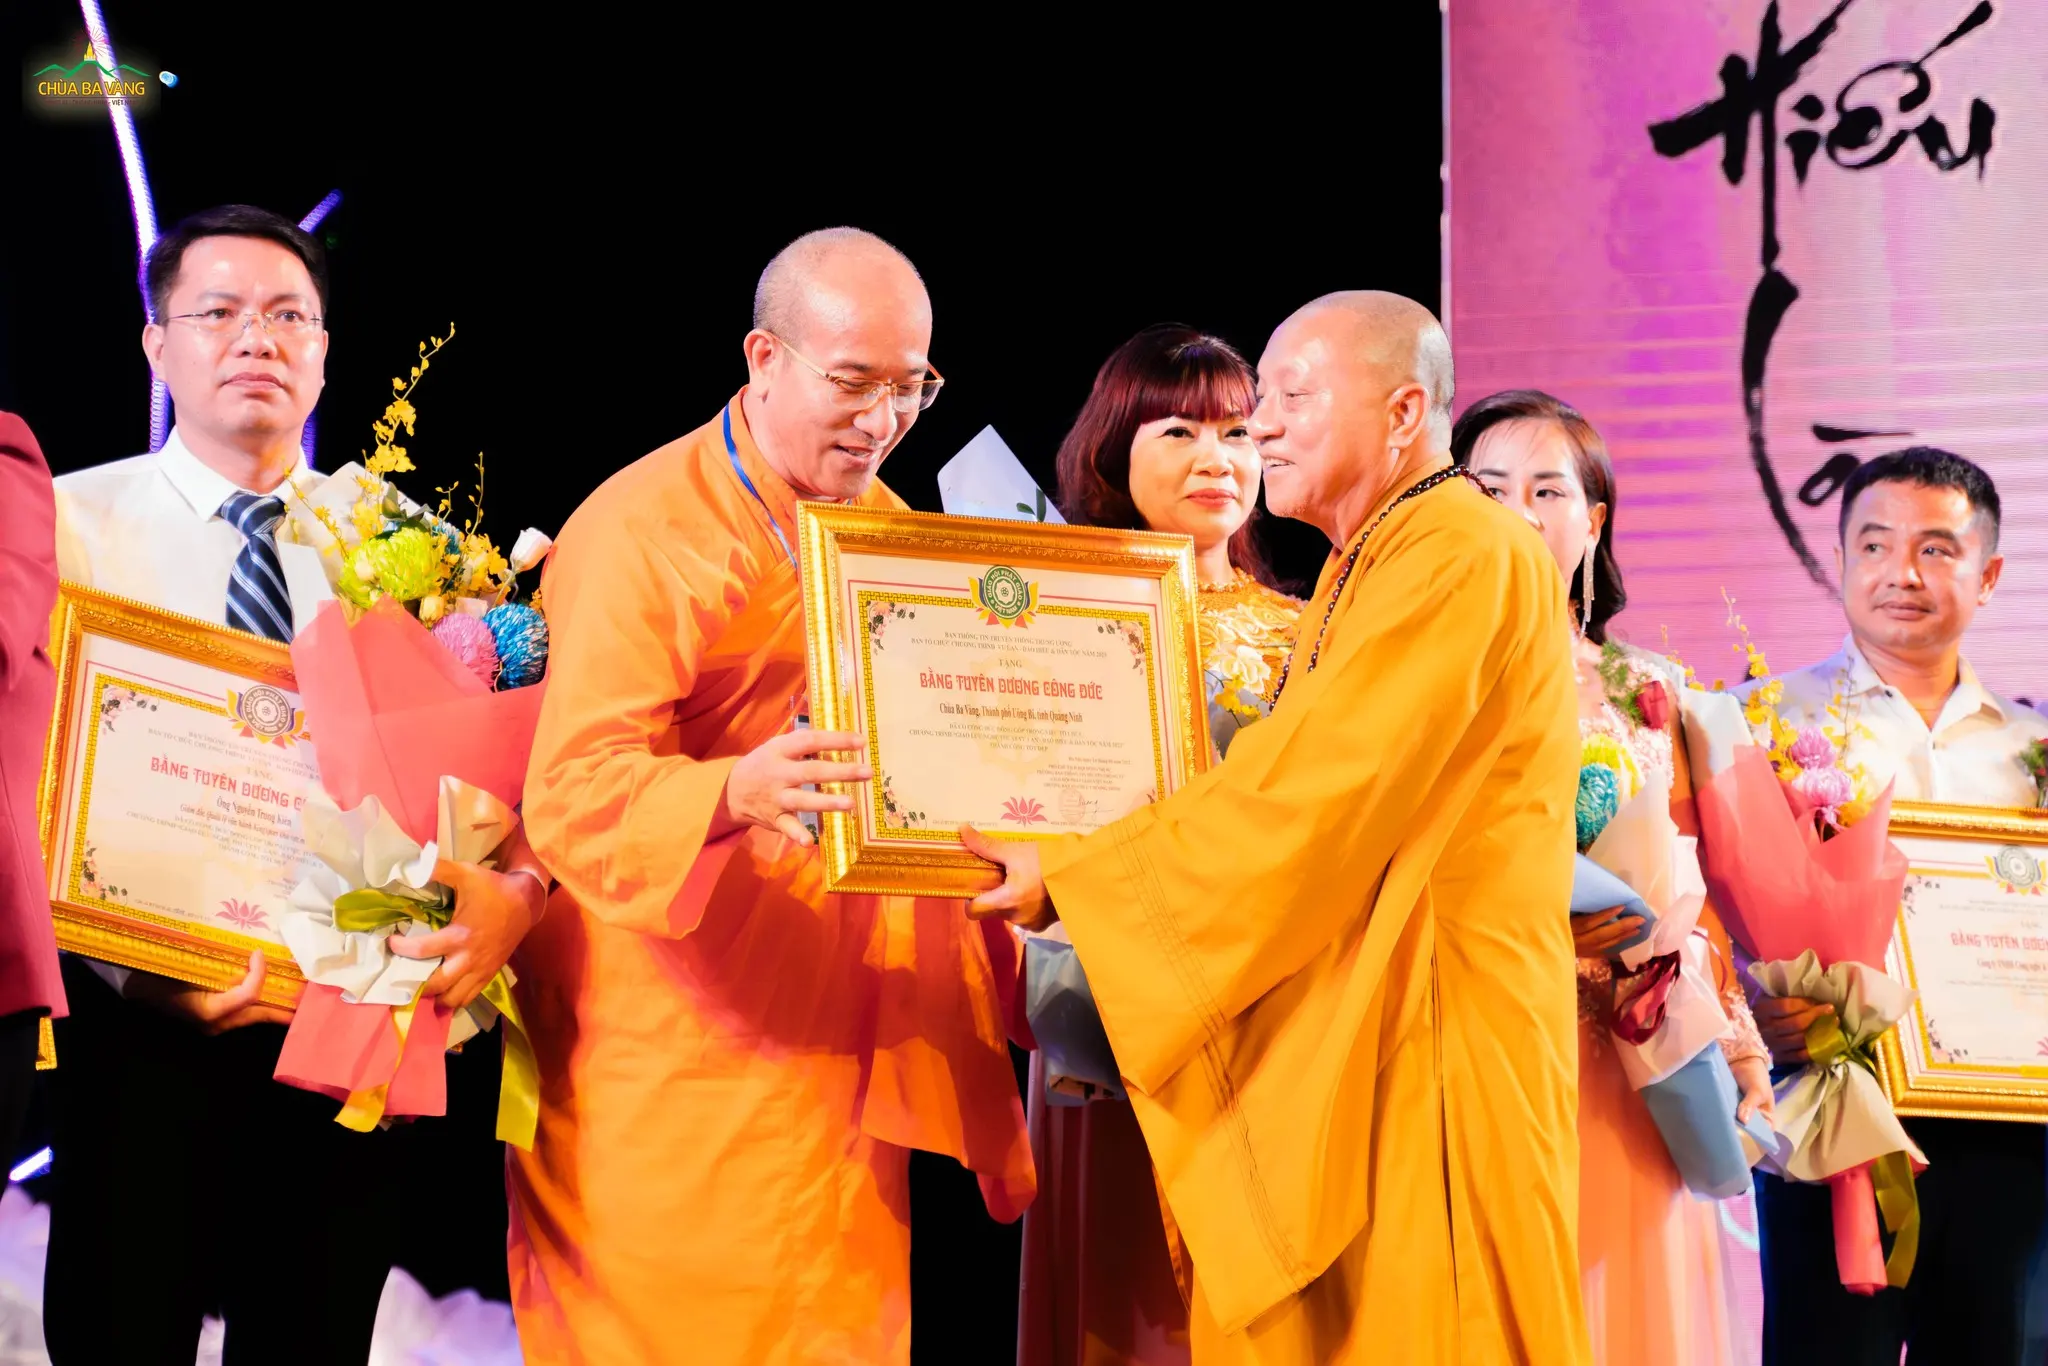 Hòa thượng Thích Gia Quang trao bằng tuyên dương công đức chùa Ba Vàng đã đóng góp trong việc tổ chức chương trình được thành công tốt đẹp